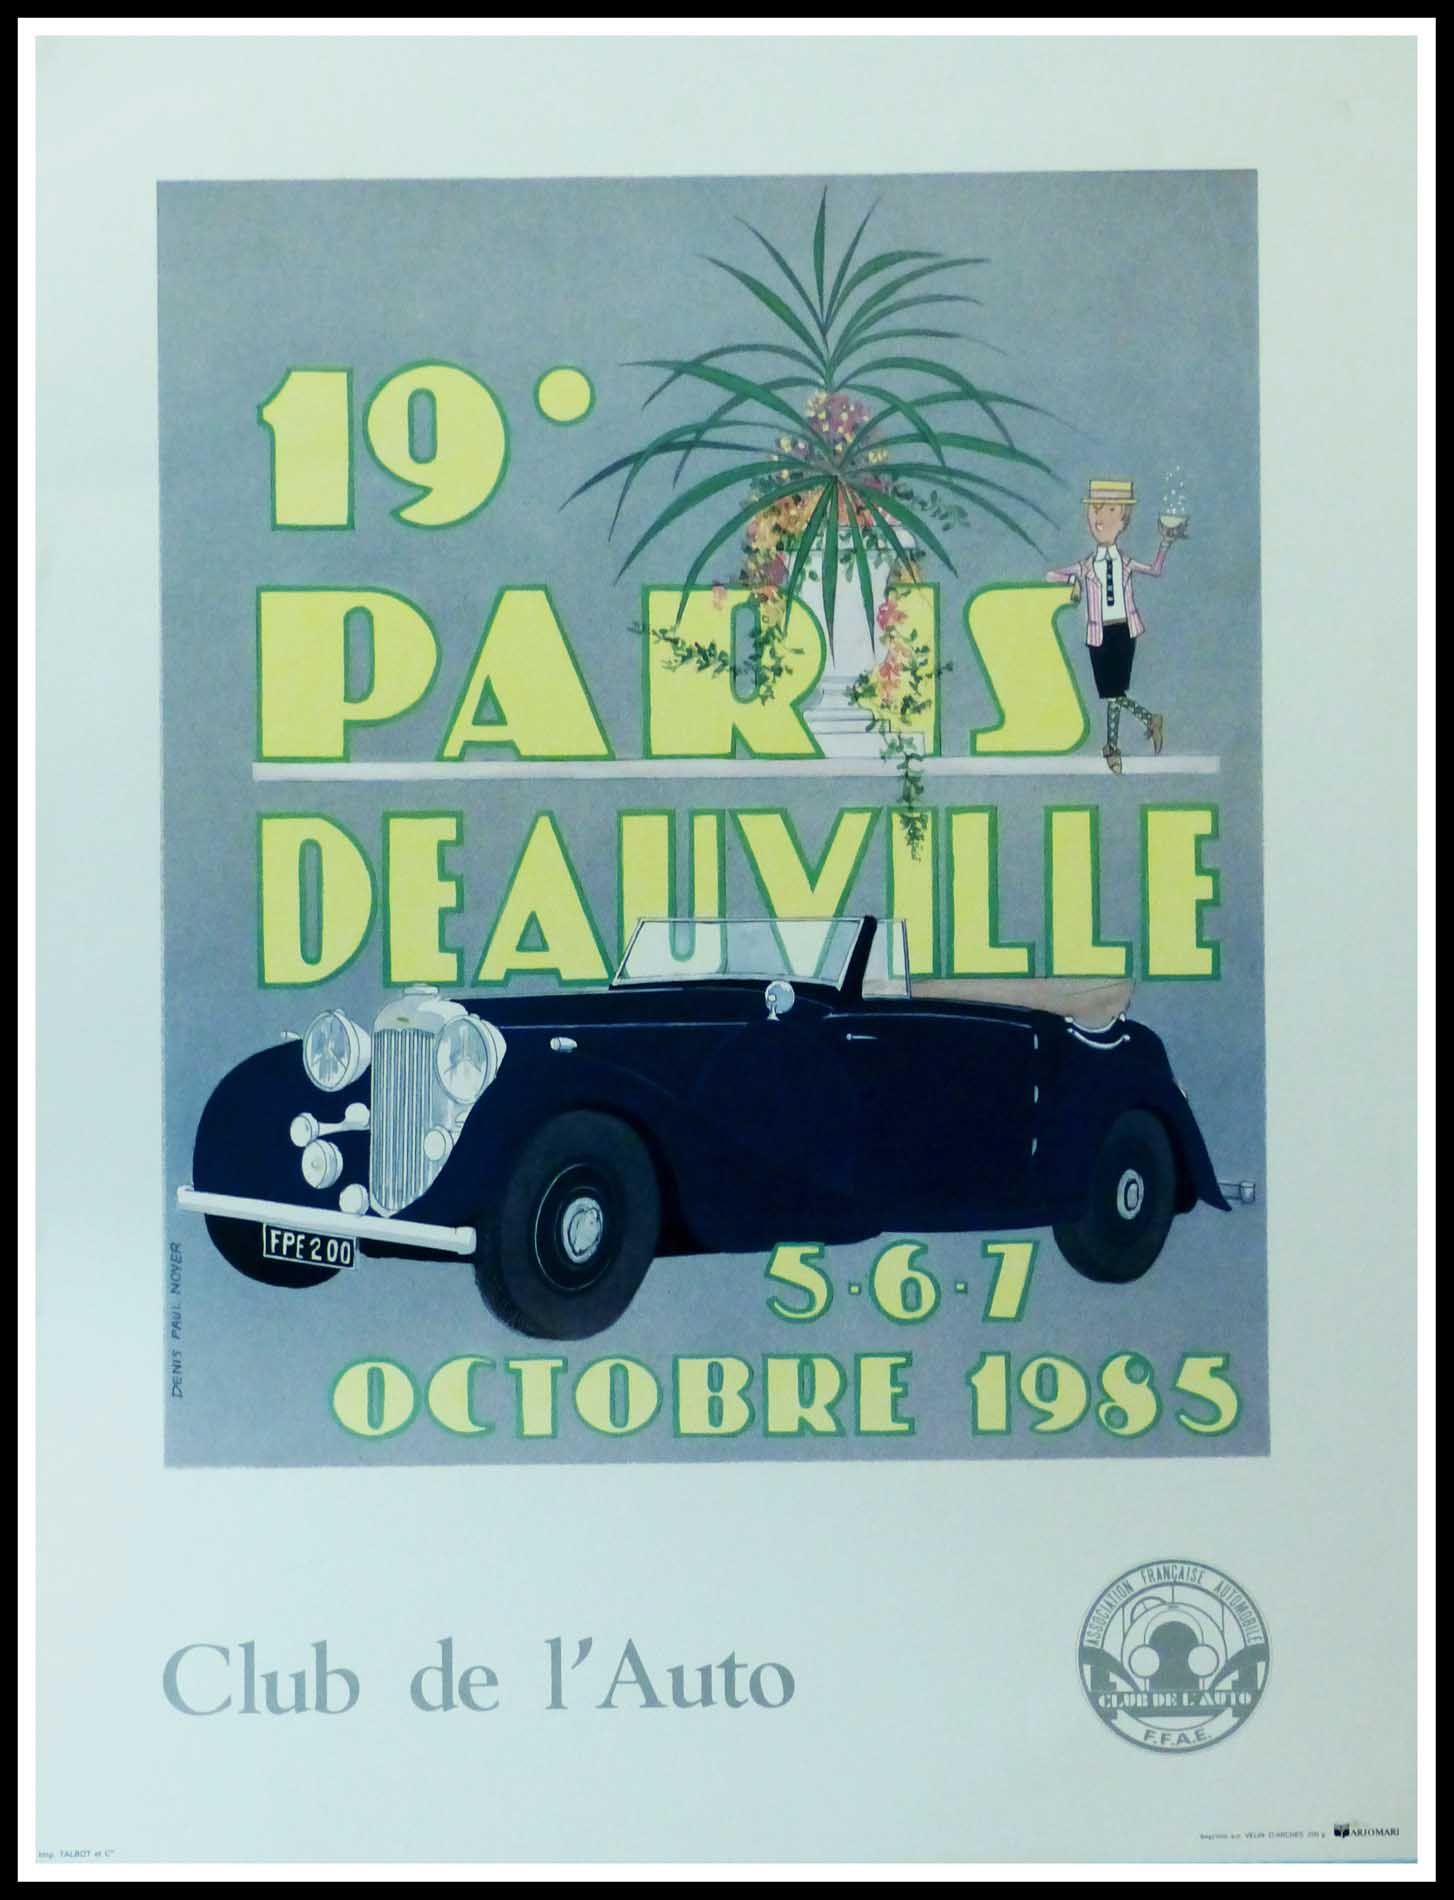 Denis-Paul Noyer Denis-Paul NOYER (1940-)

19ème Rallye Paris Deauville, 1985

a&hellip;